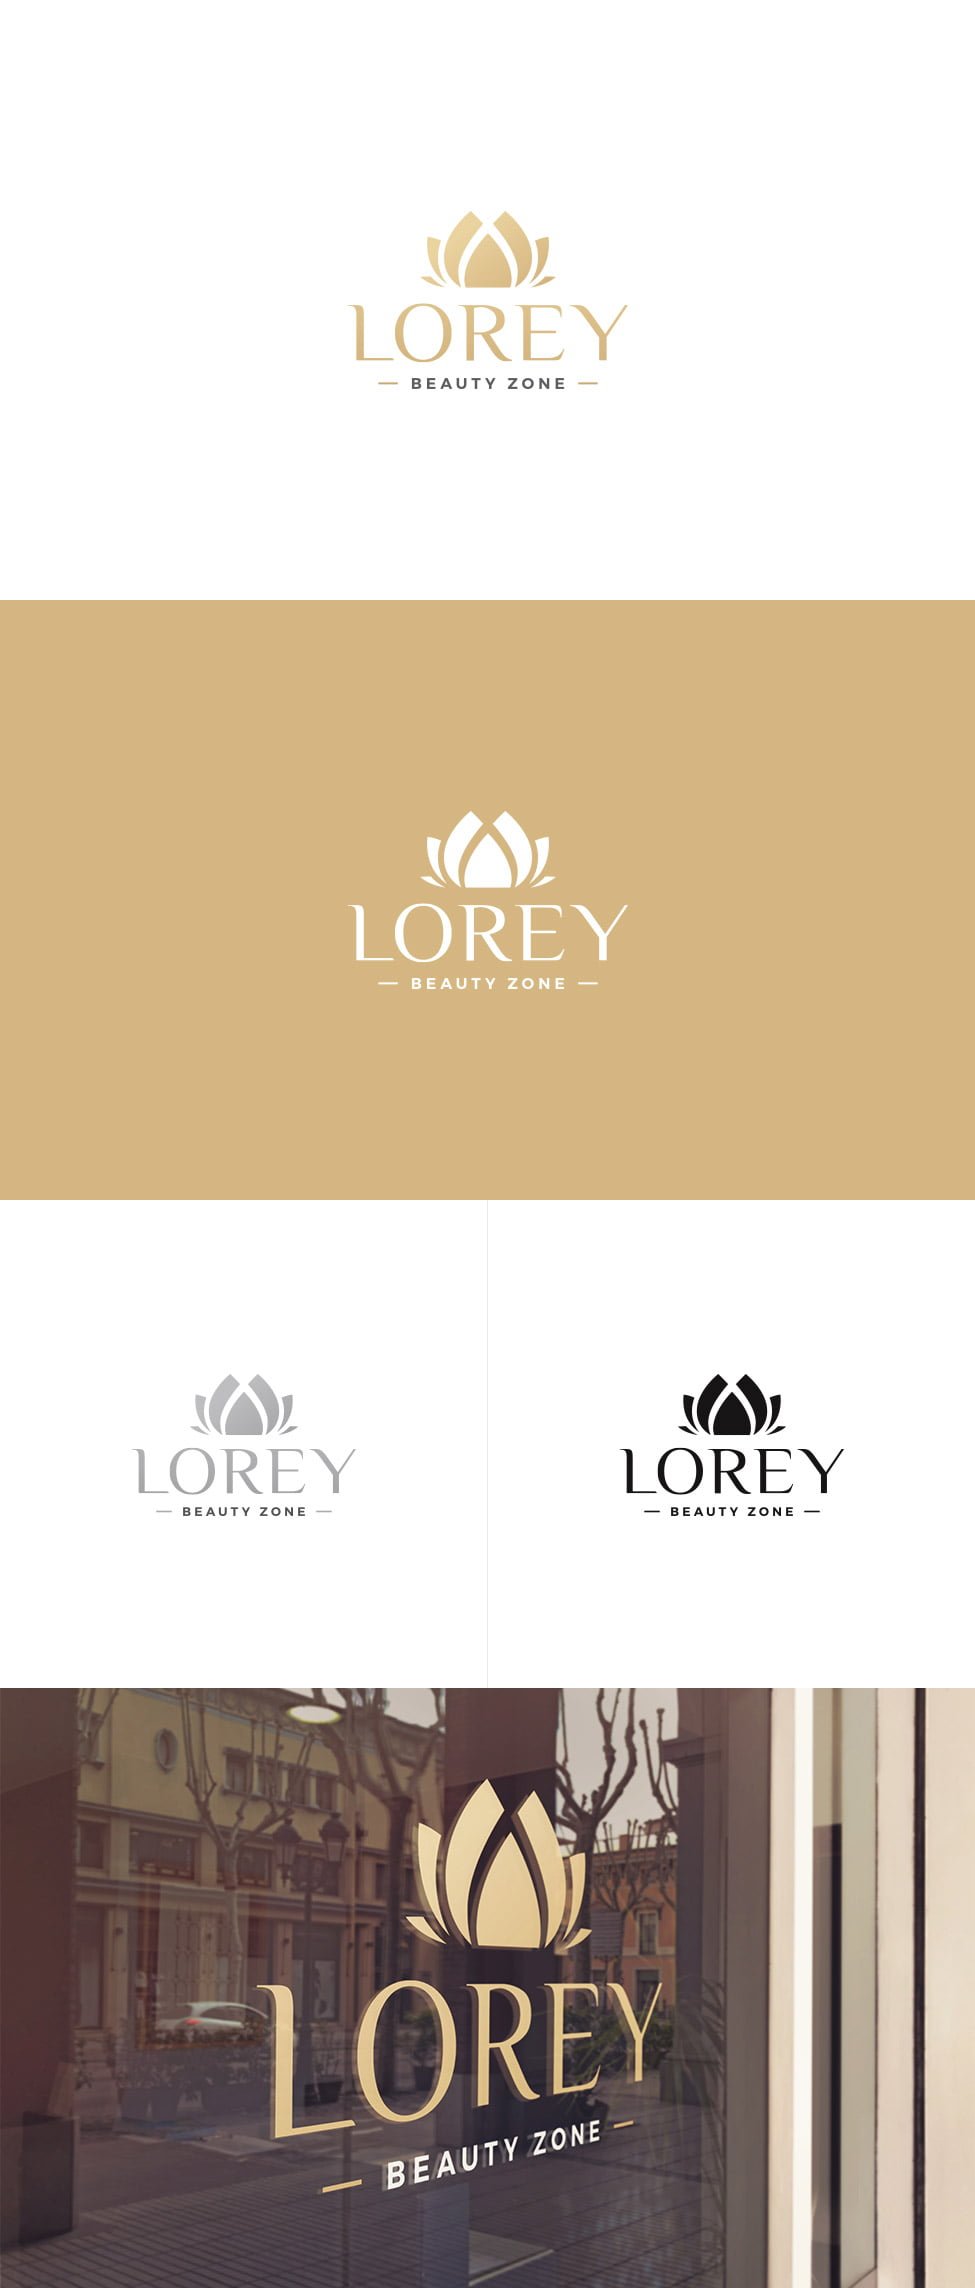 Lorey – logo